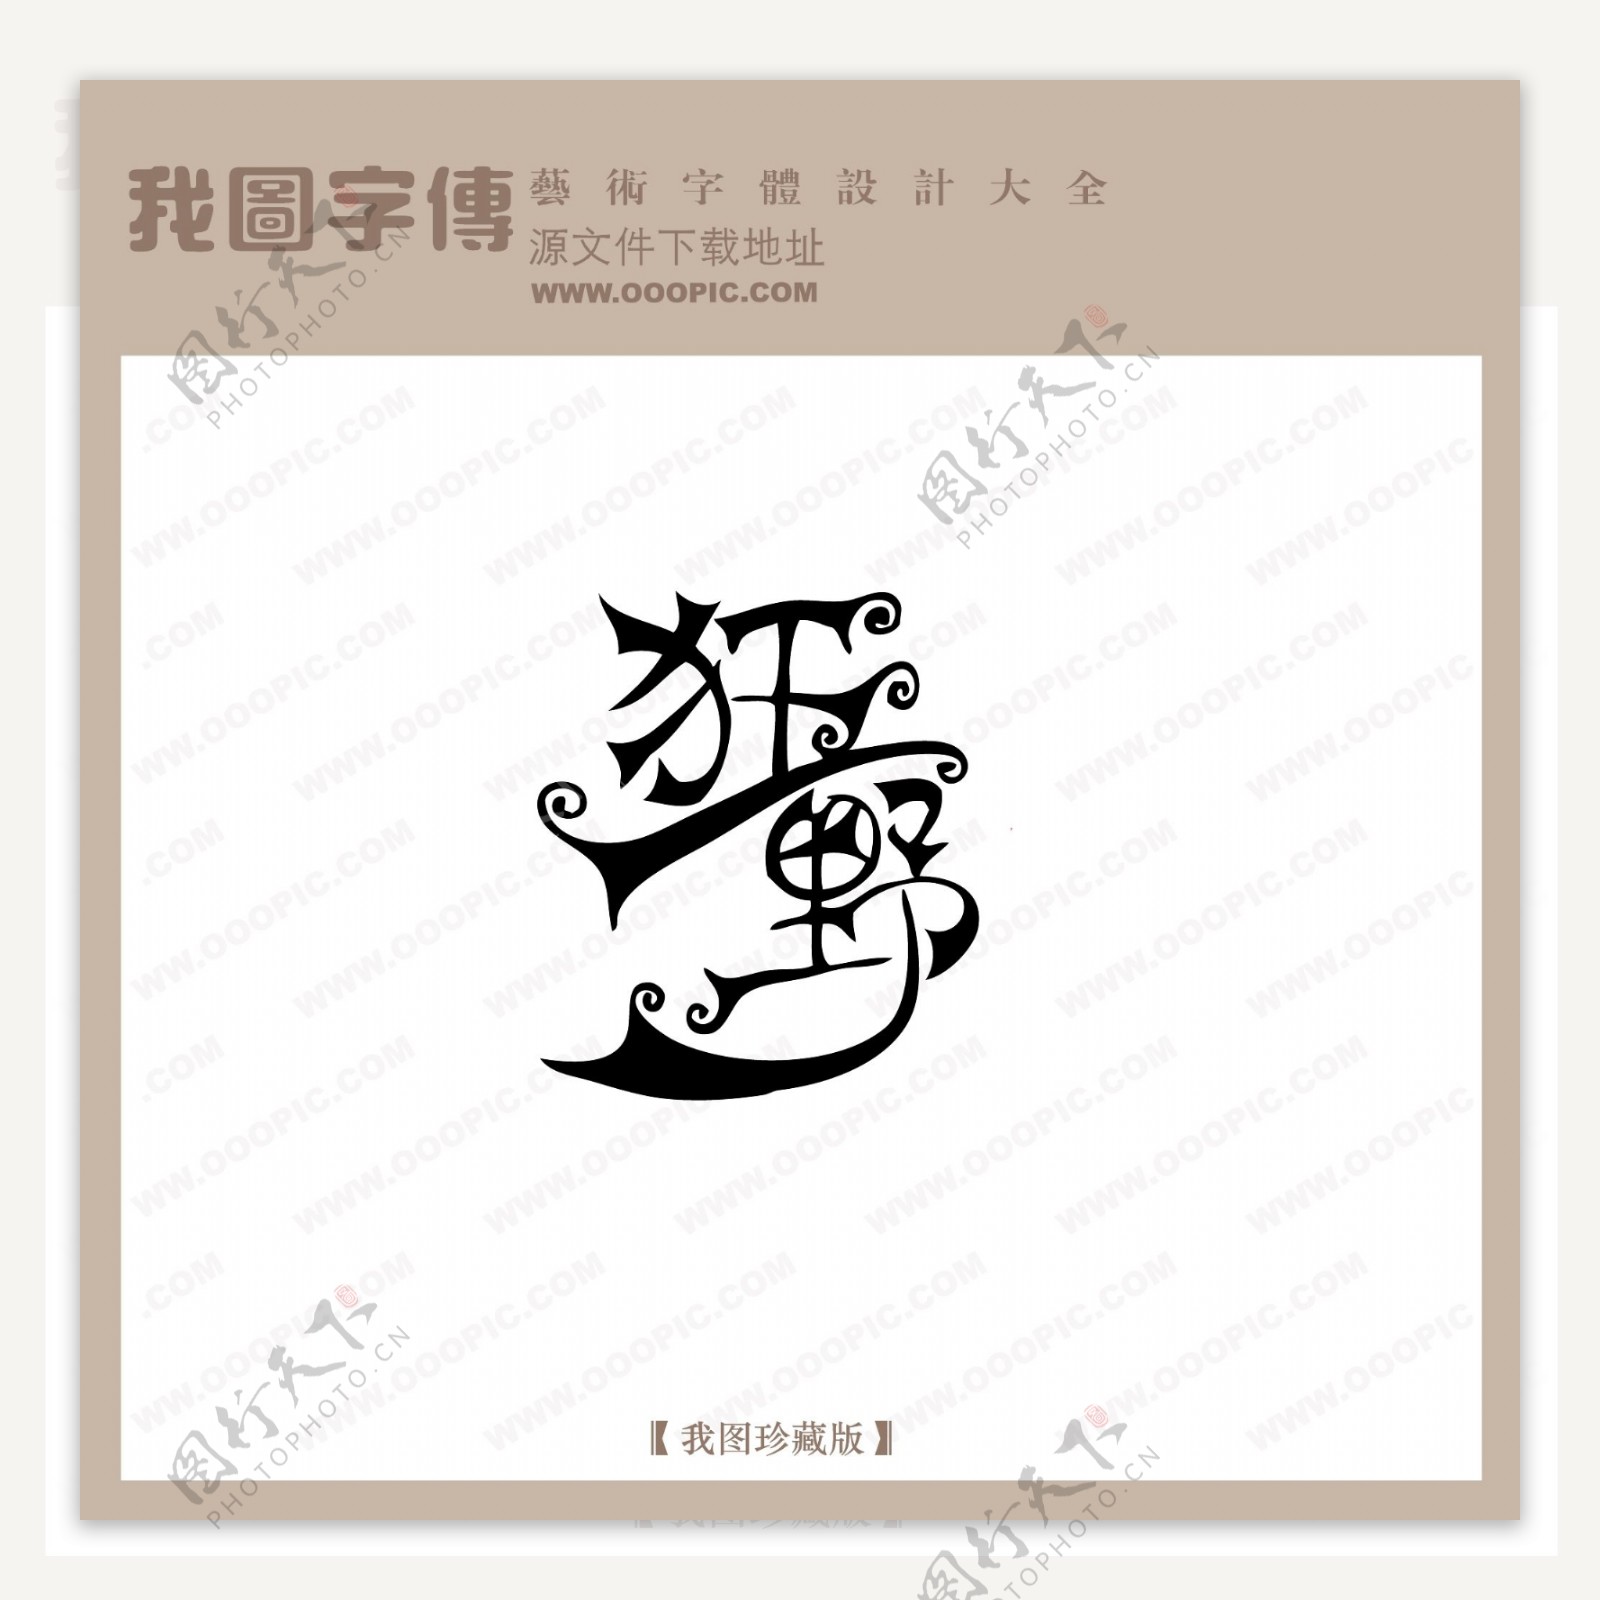 狂野中文现代艺术字创意美工艺术字下载中国字体下载